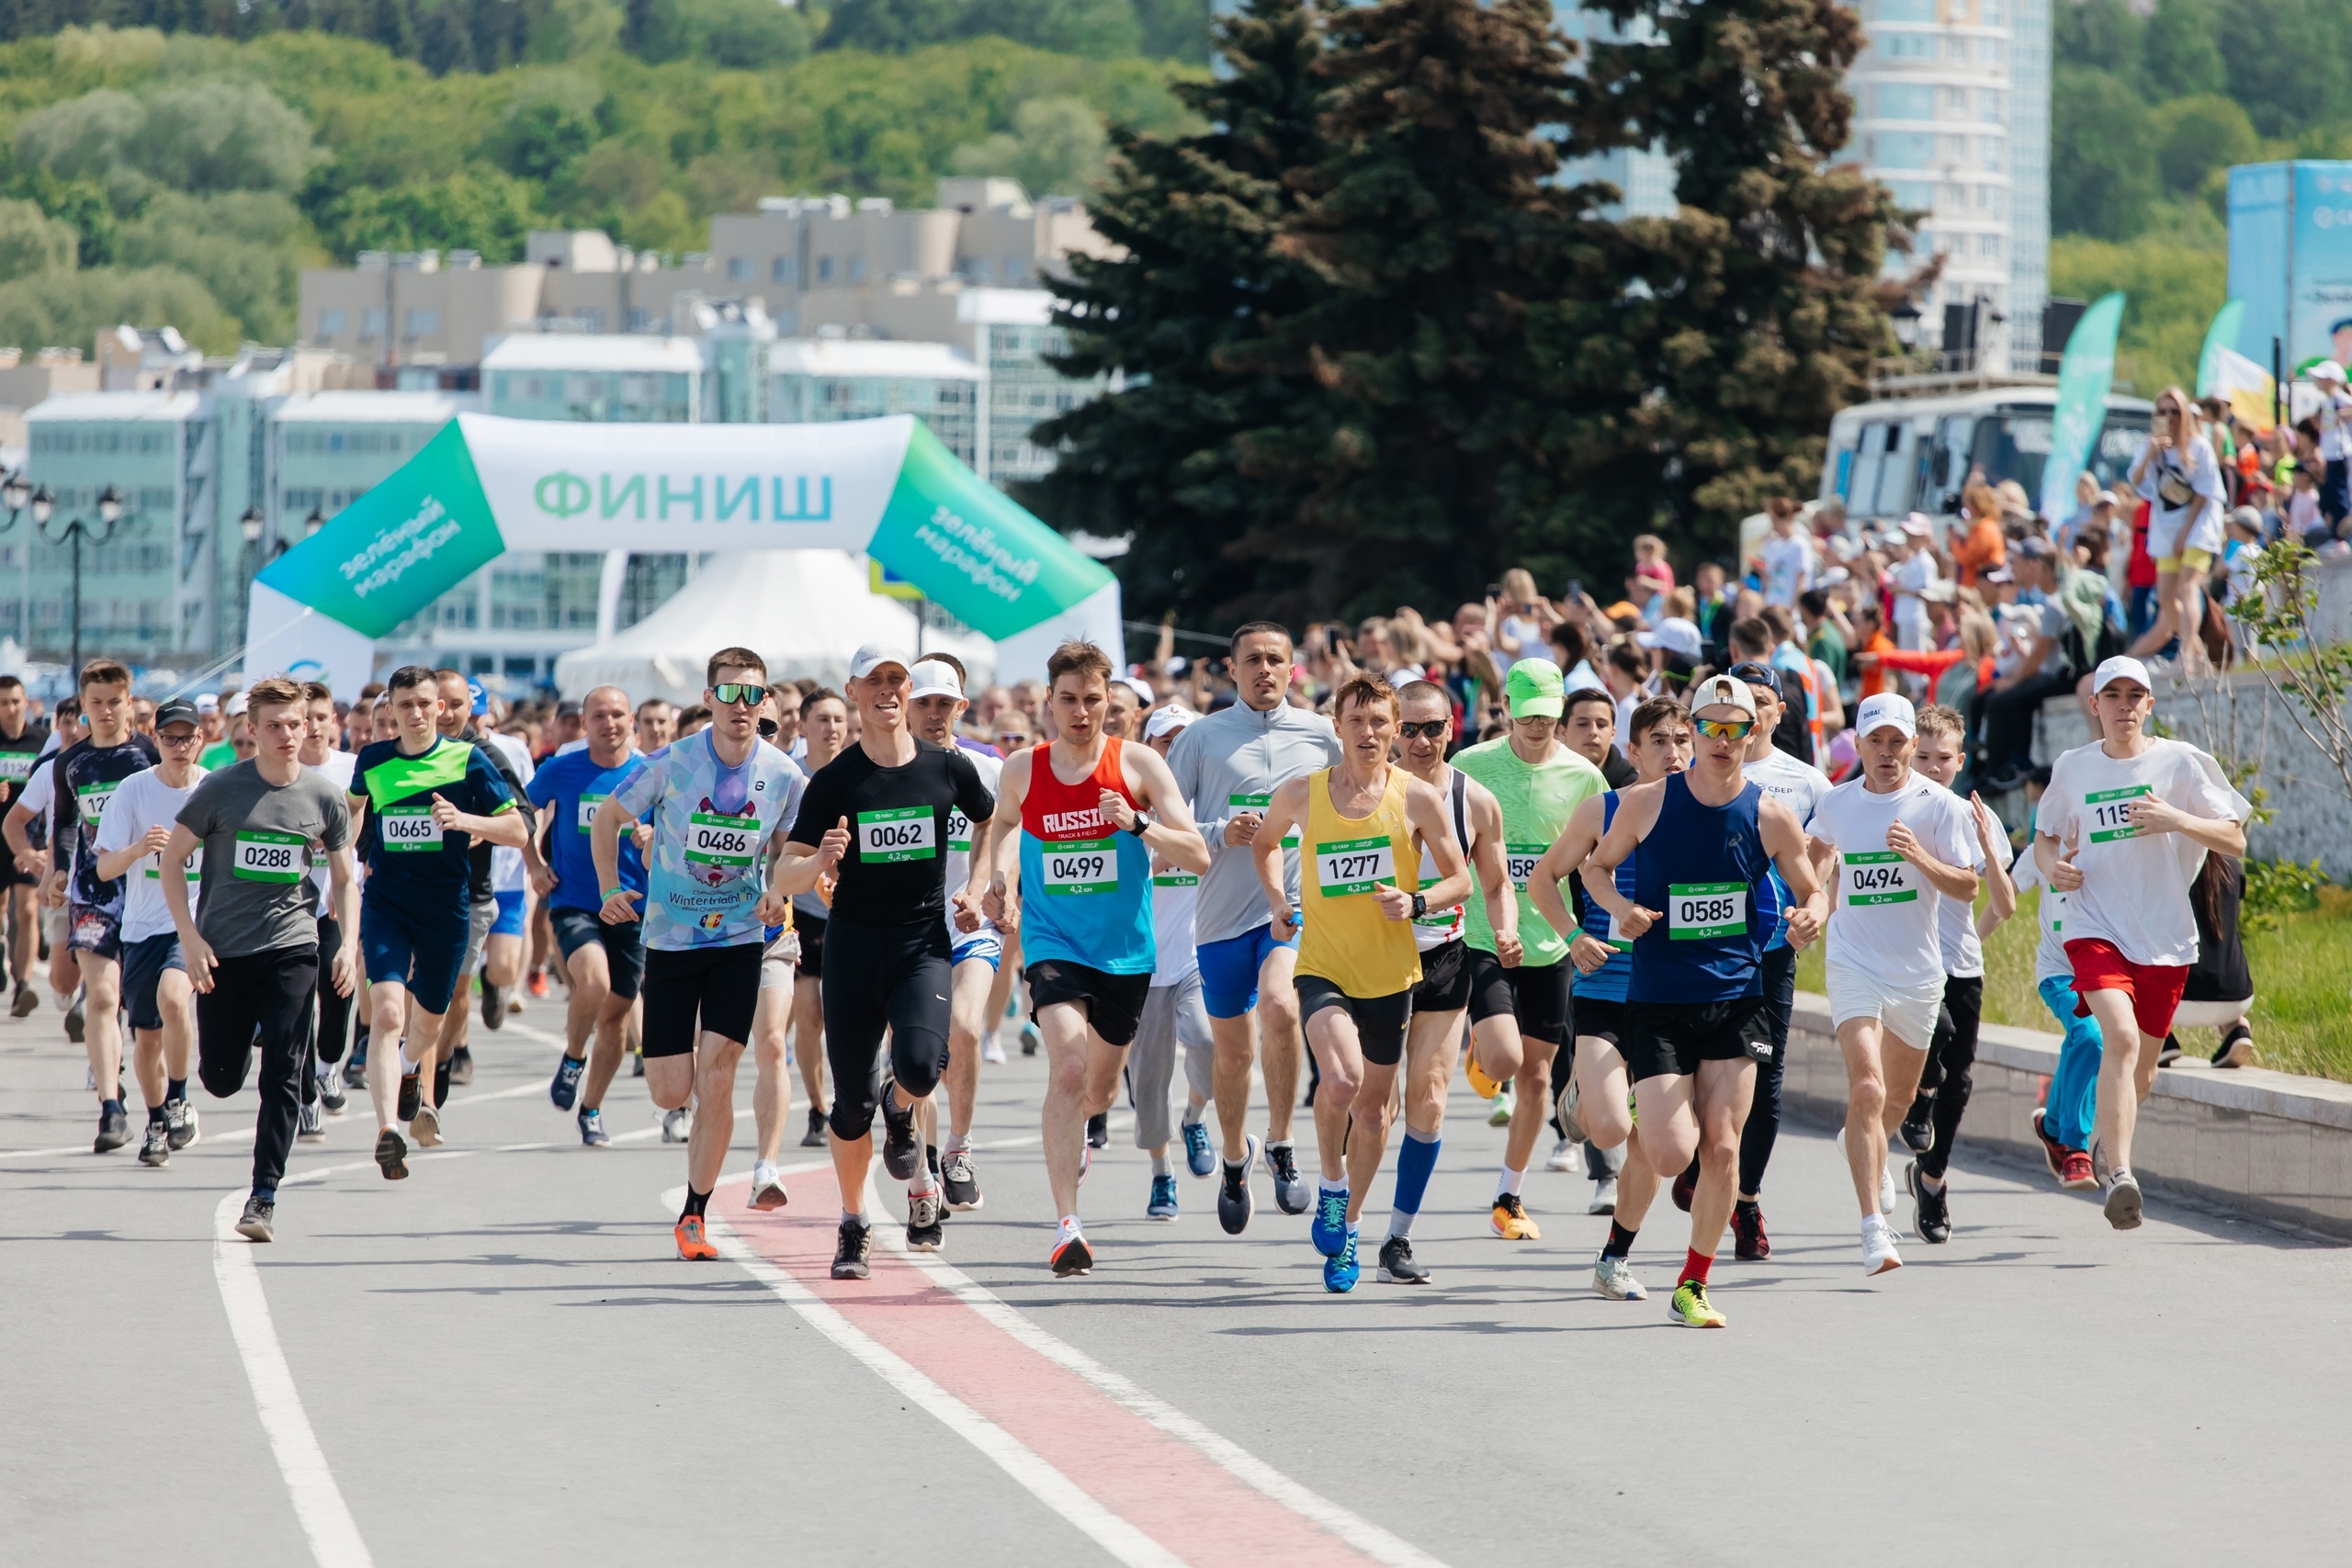 Зарегистрироваться на Зеленый марафон можно до 26 мая